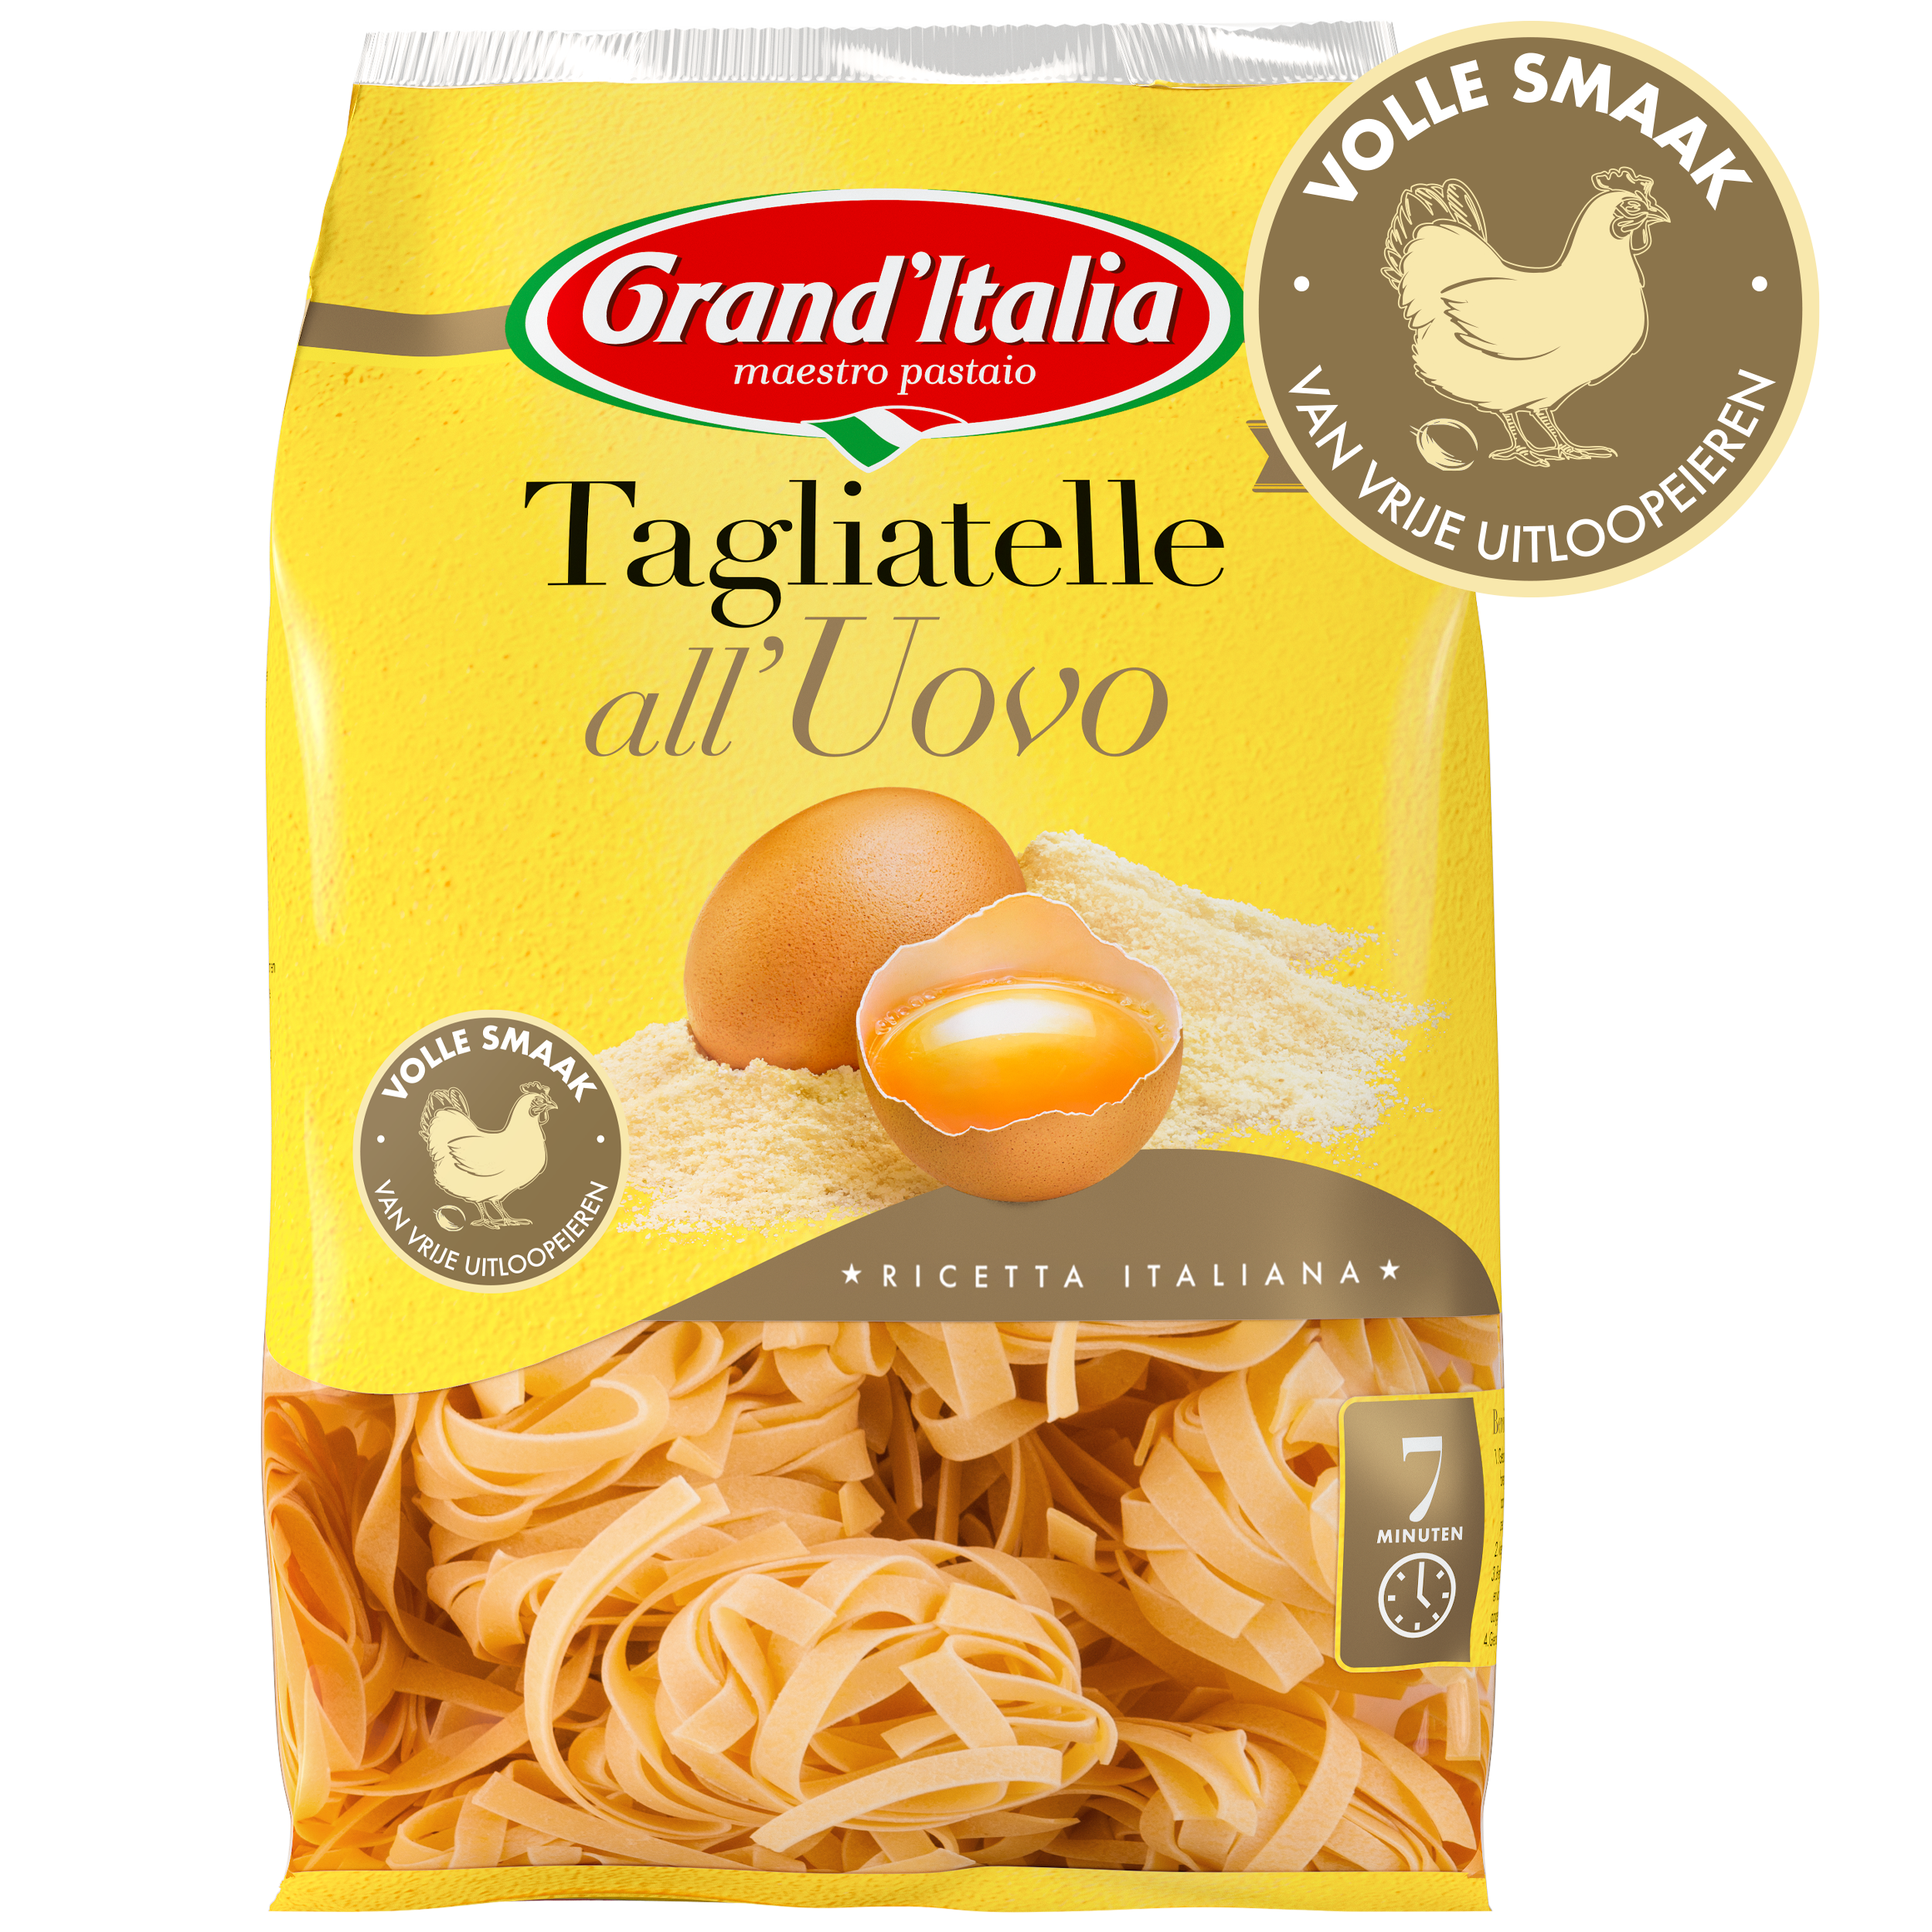 Pasta Tagliatelle all'Uovo 500g claim Grand'Italia